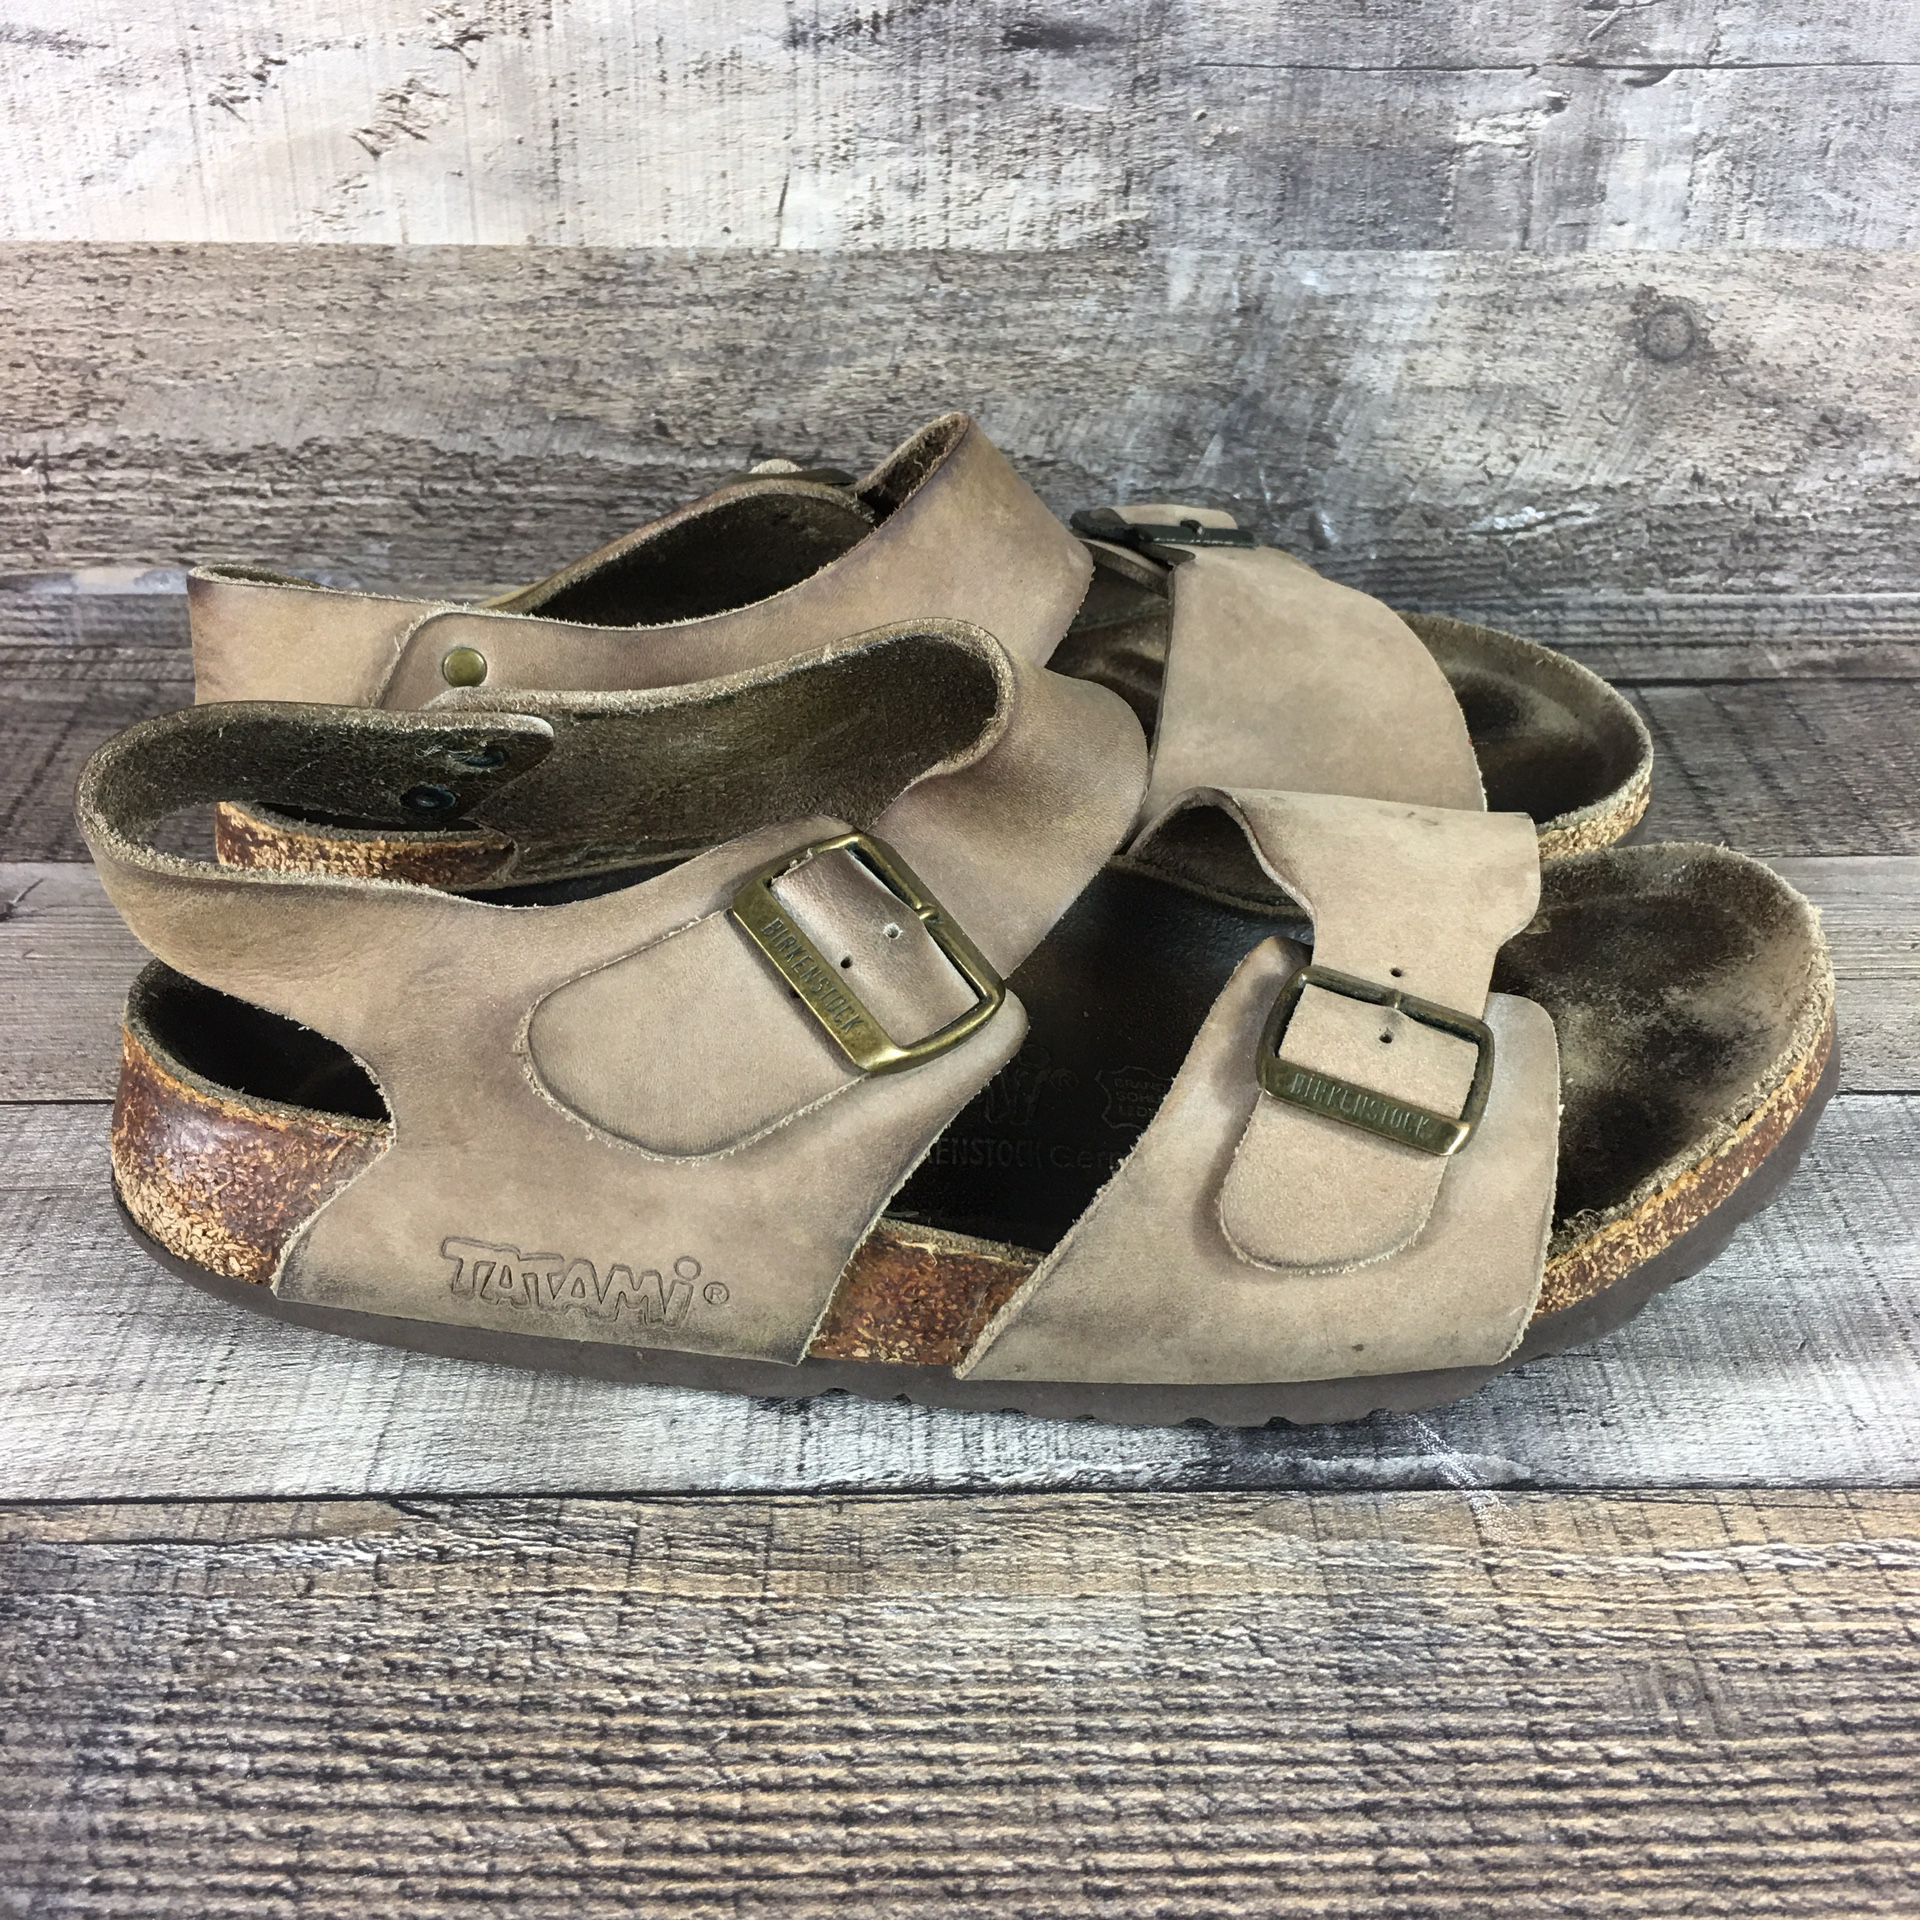 Birkenstock Tatami Leather Sandals Arizona Buckle Strap Tan Size 39 55 250 L8 M6